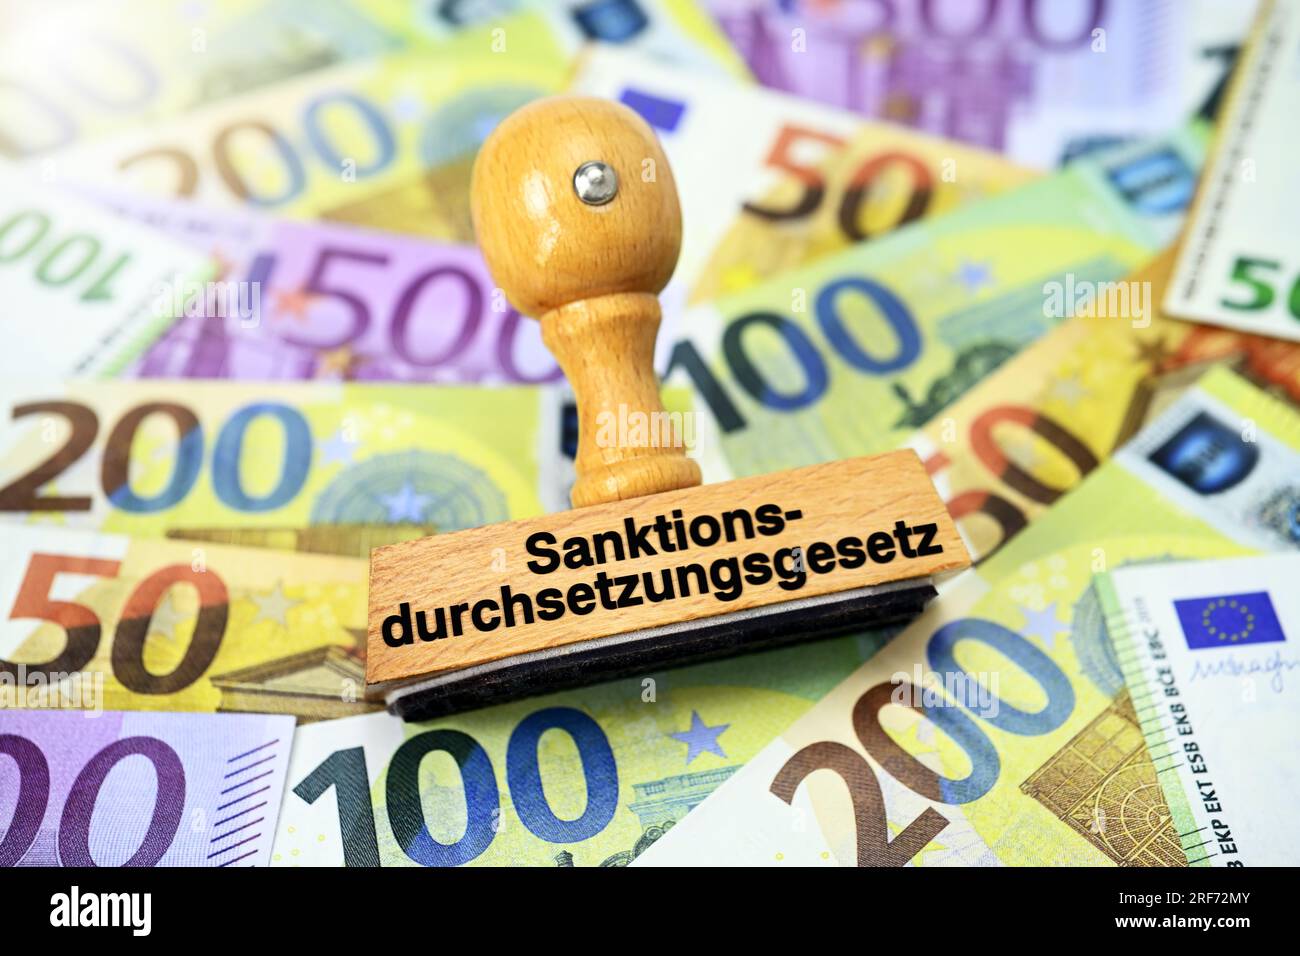 FOTOMONTAGE, Stempel mit Aufschrift Sanktionsdurchsetzungsgesetz auf Euroseinen Foto Stock